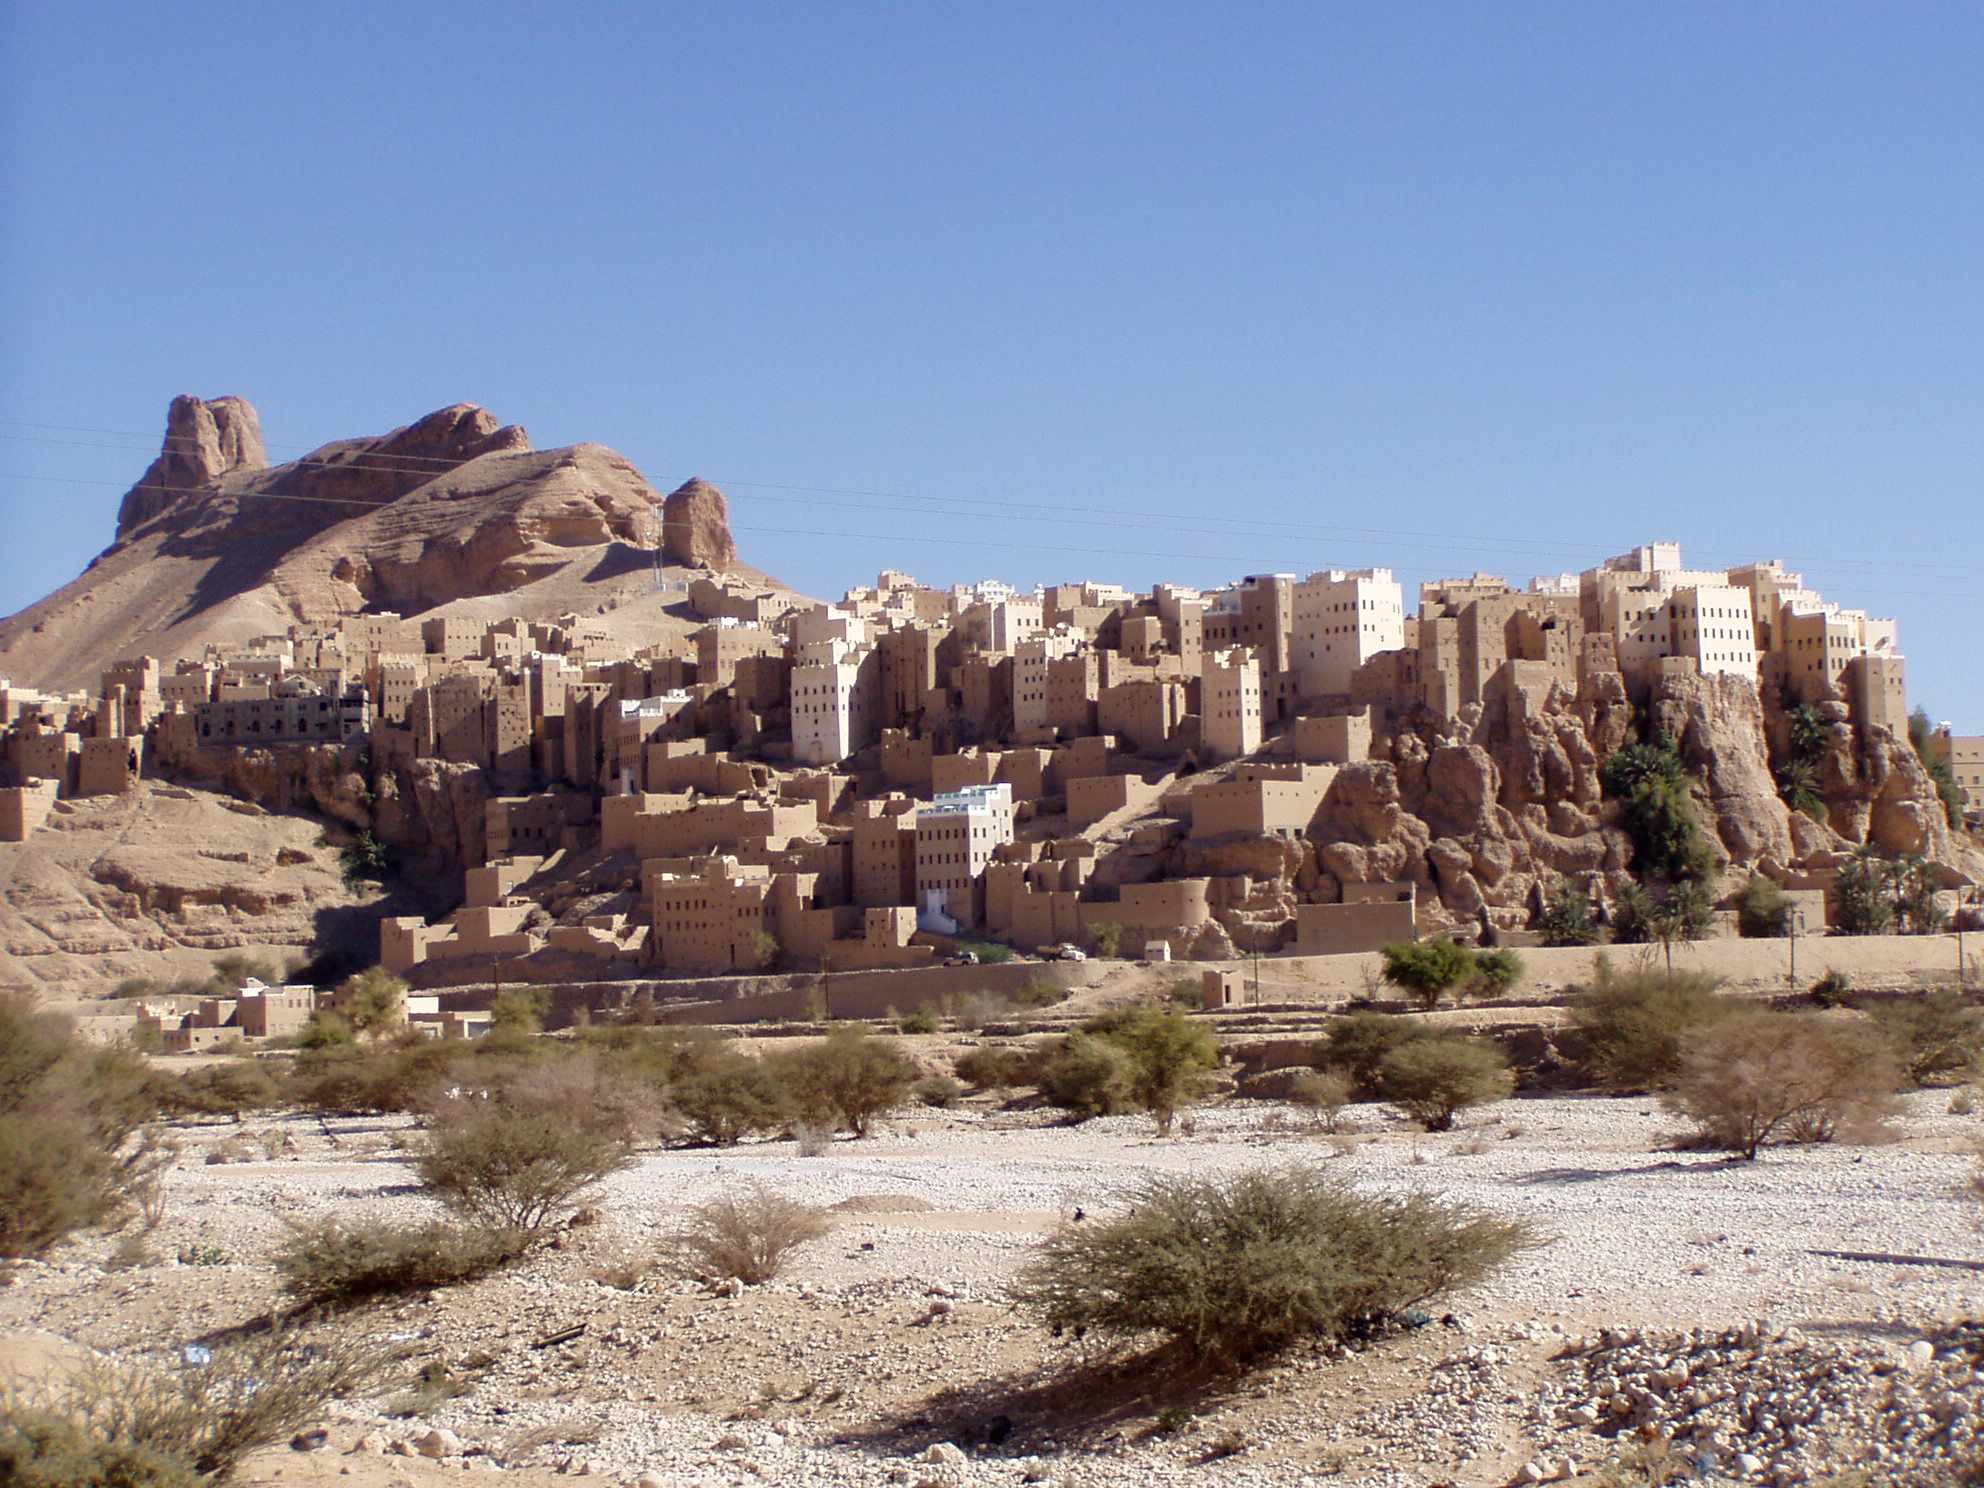 Nevjerojatno selo u Jemenu izgrađeno na 150 metara visokom gigantskom kamenom bloku 2